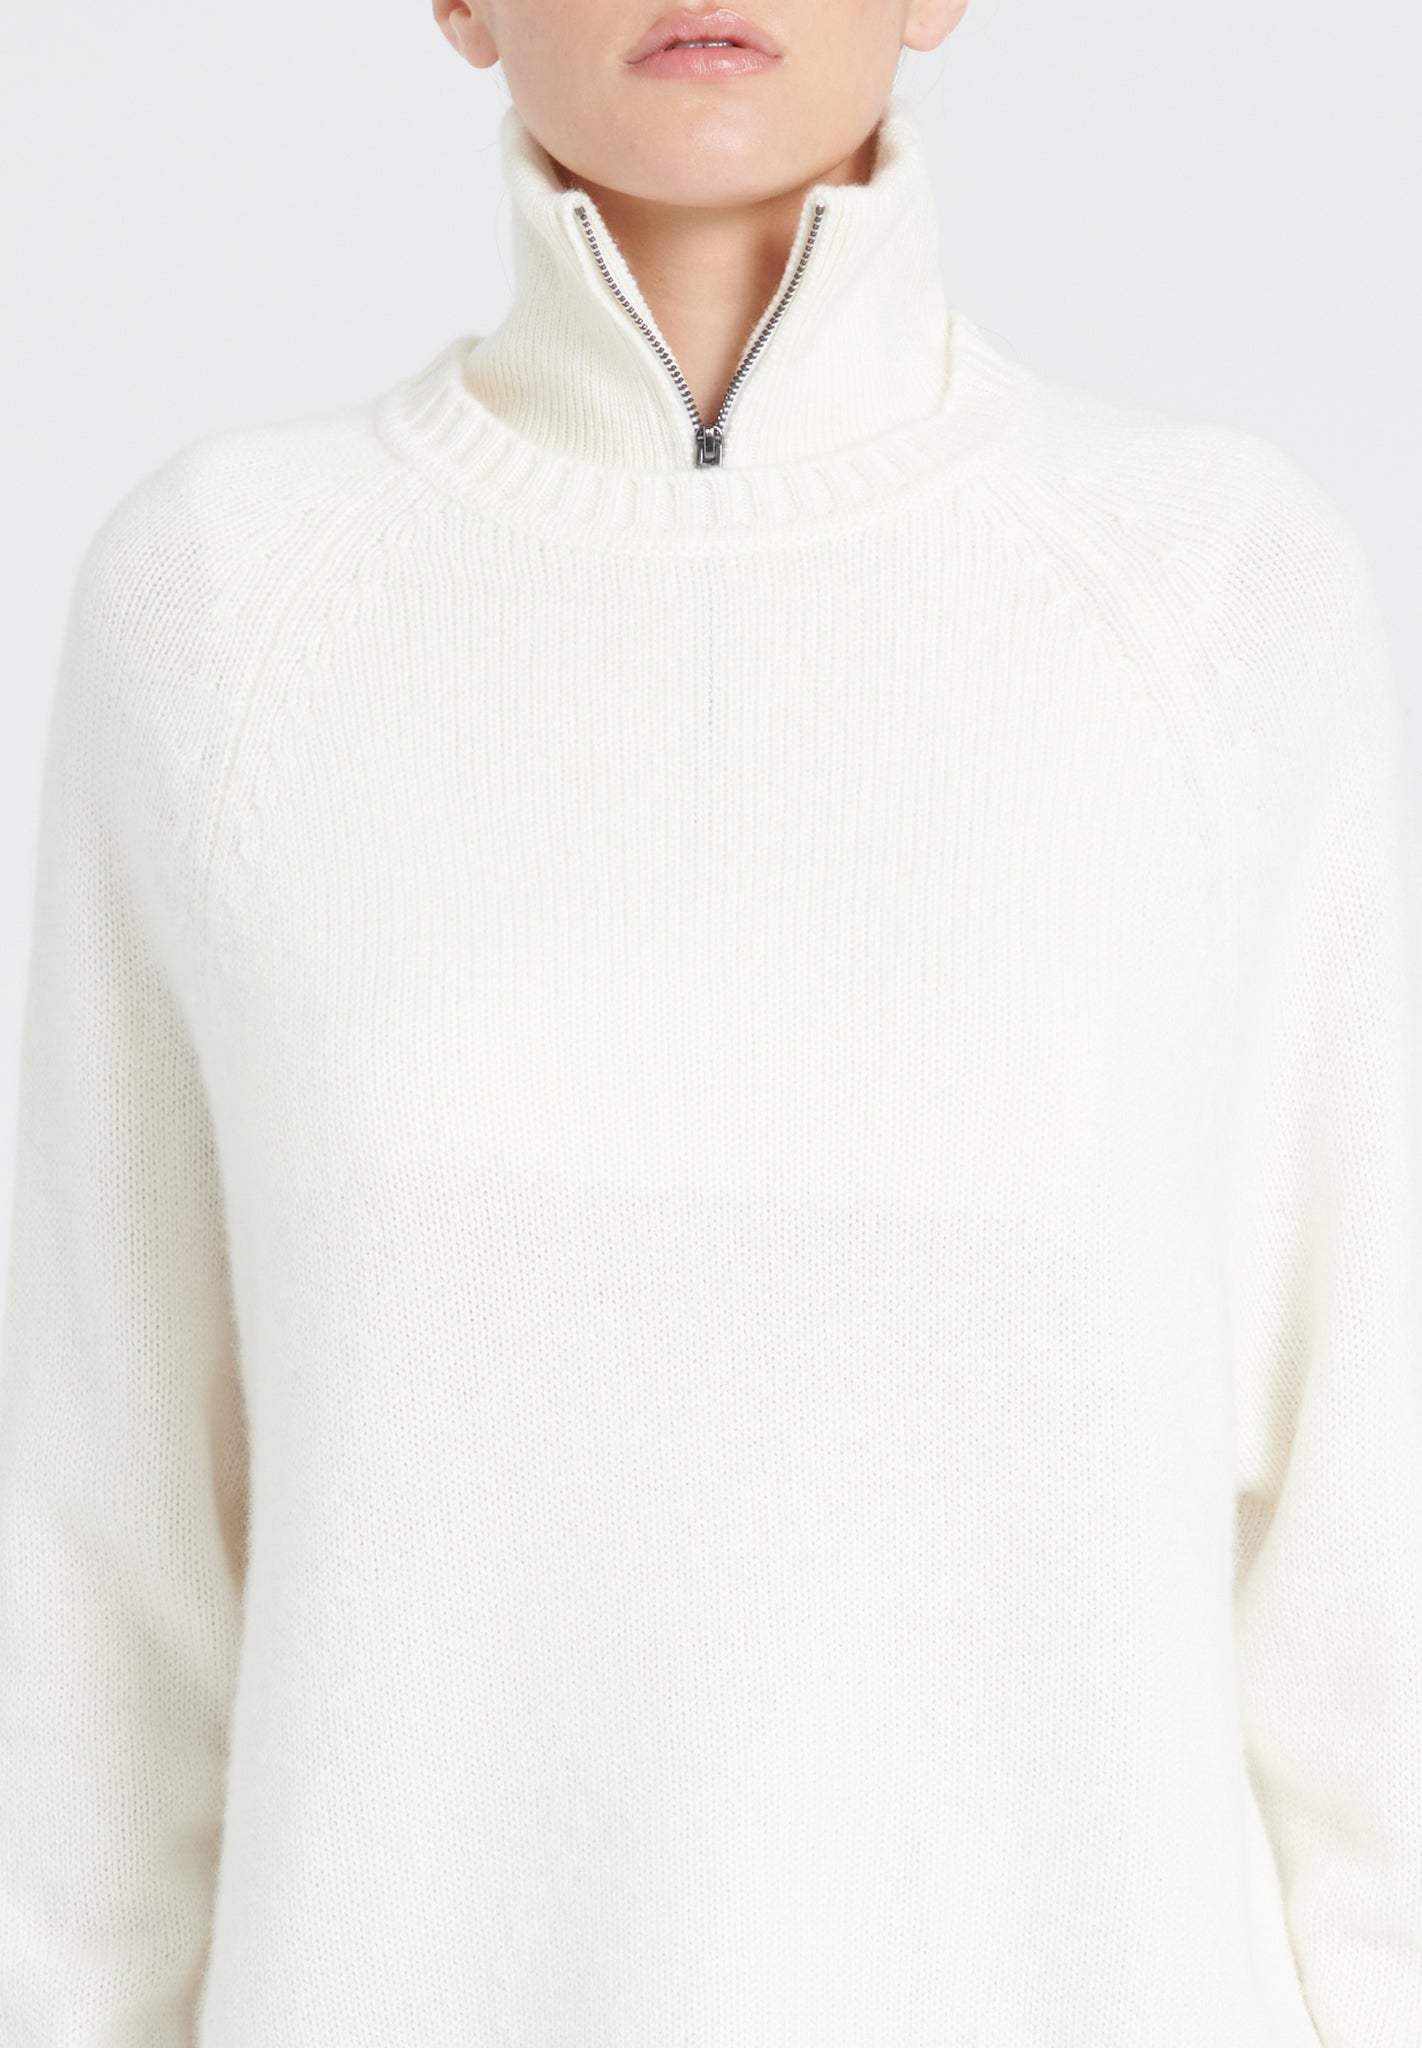 ZAYA 7 Round neck sweater with raglan sleeves in 6-thread cashmere, ecru white